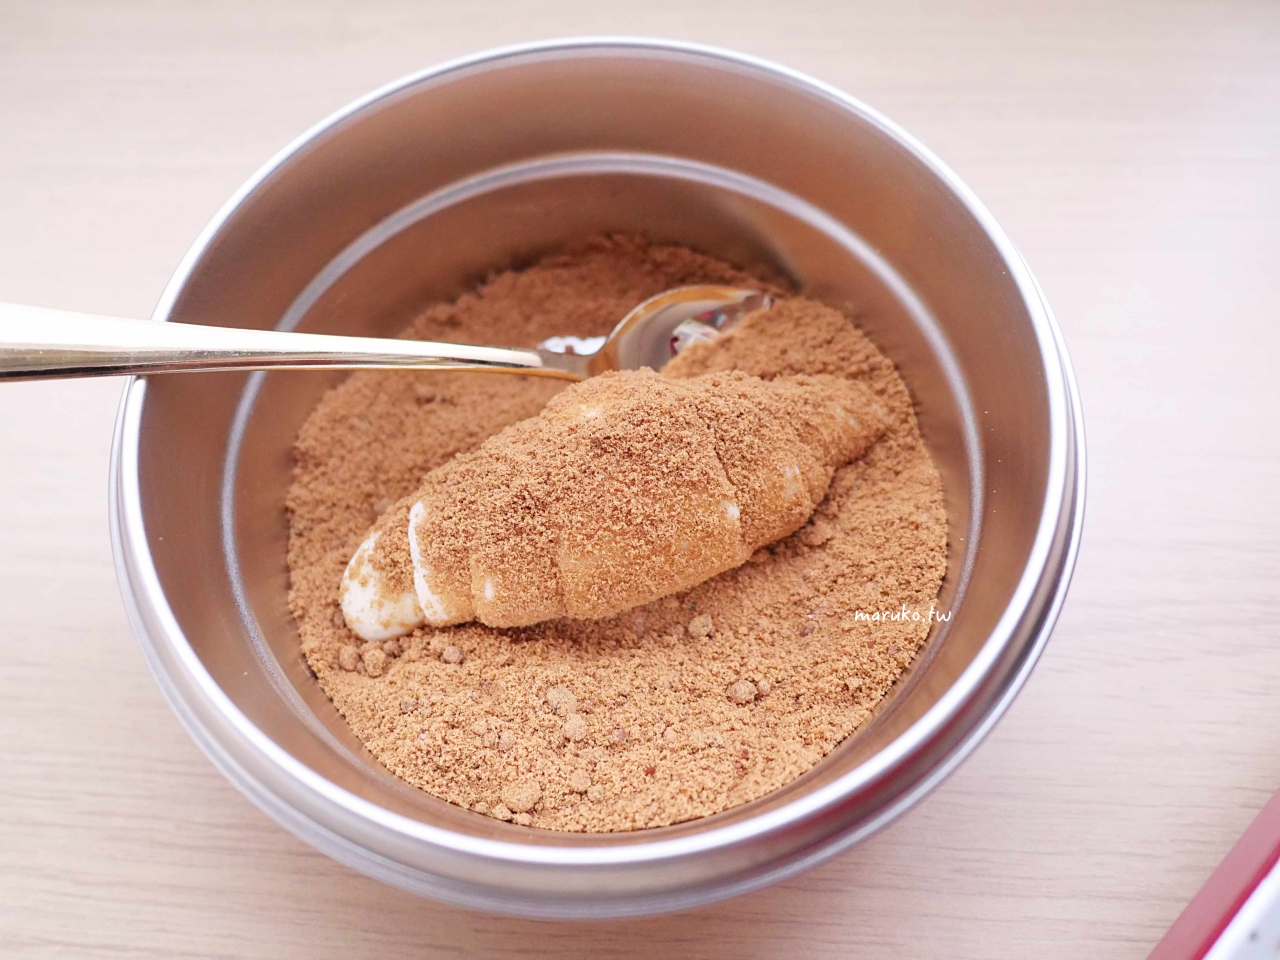 【食譜】脆皮肉桂黑糖可朗芙 用鬆餅粉做韓國最流行的 croiffle 熱壓可朗芙做法 @Maruko與美食有個約會